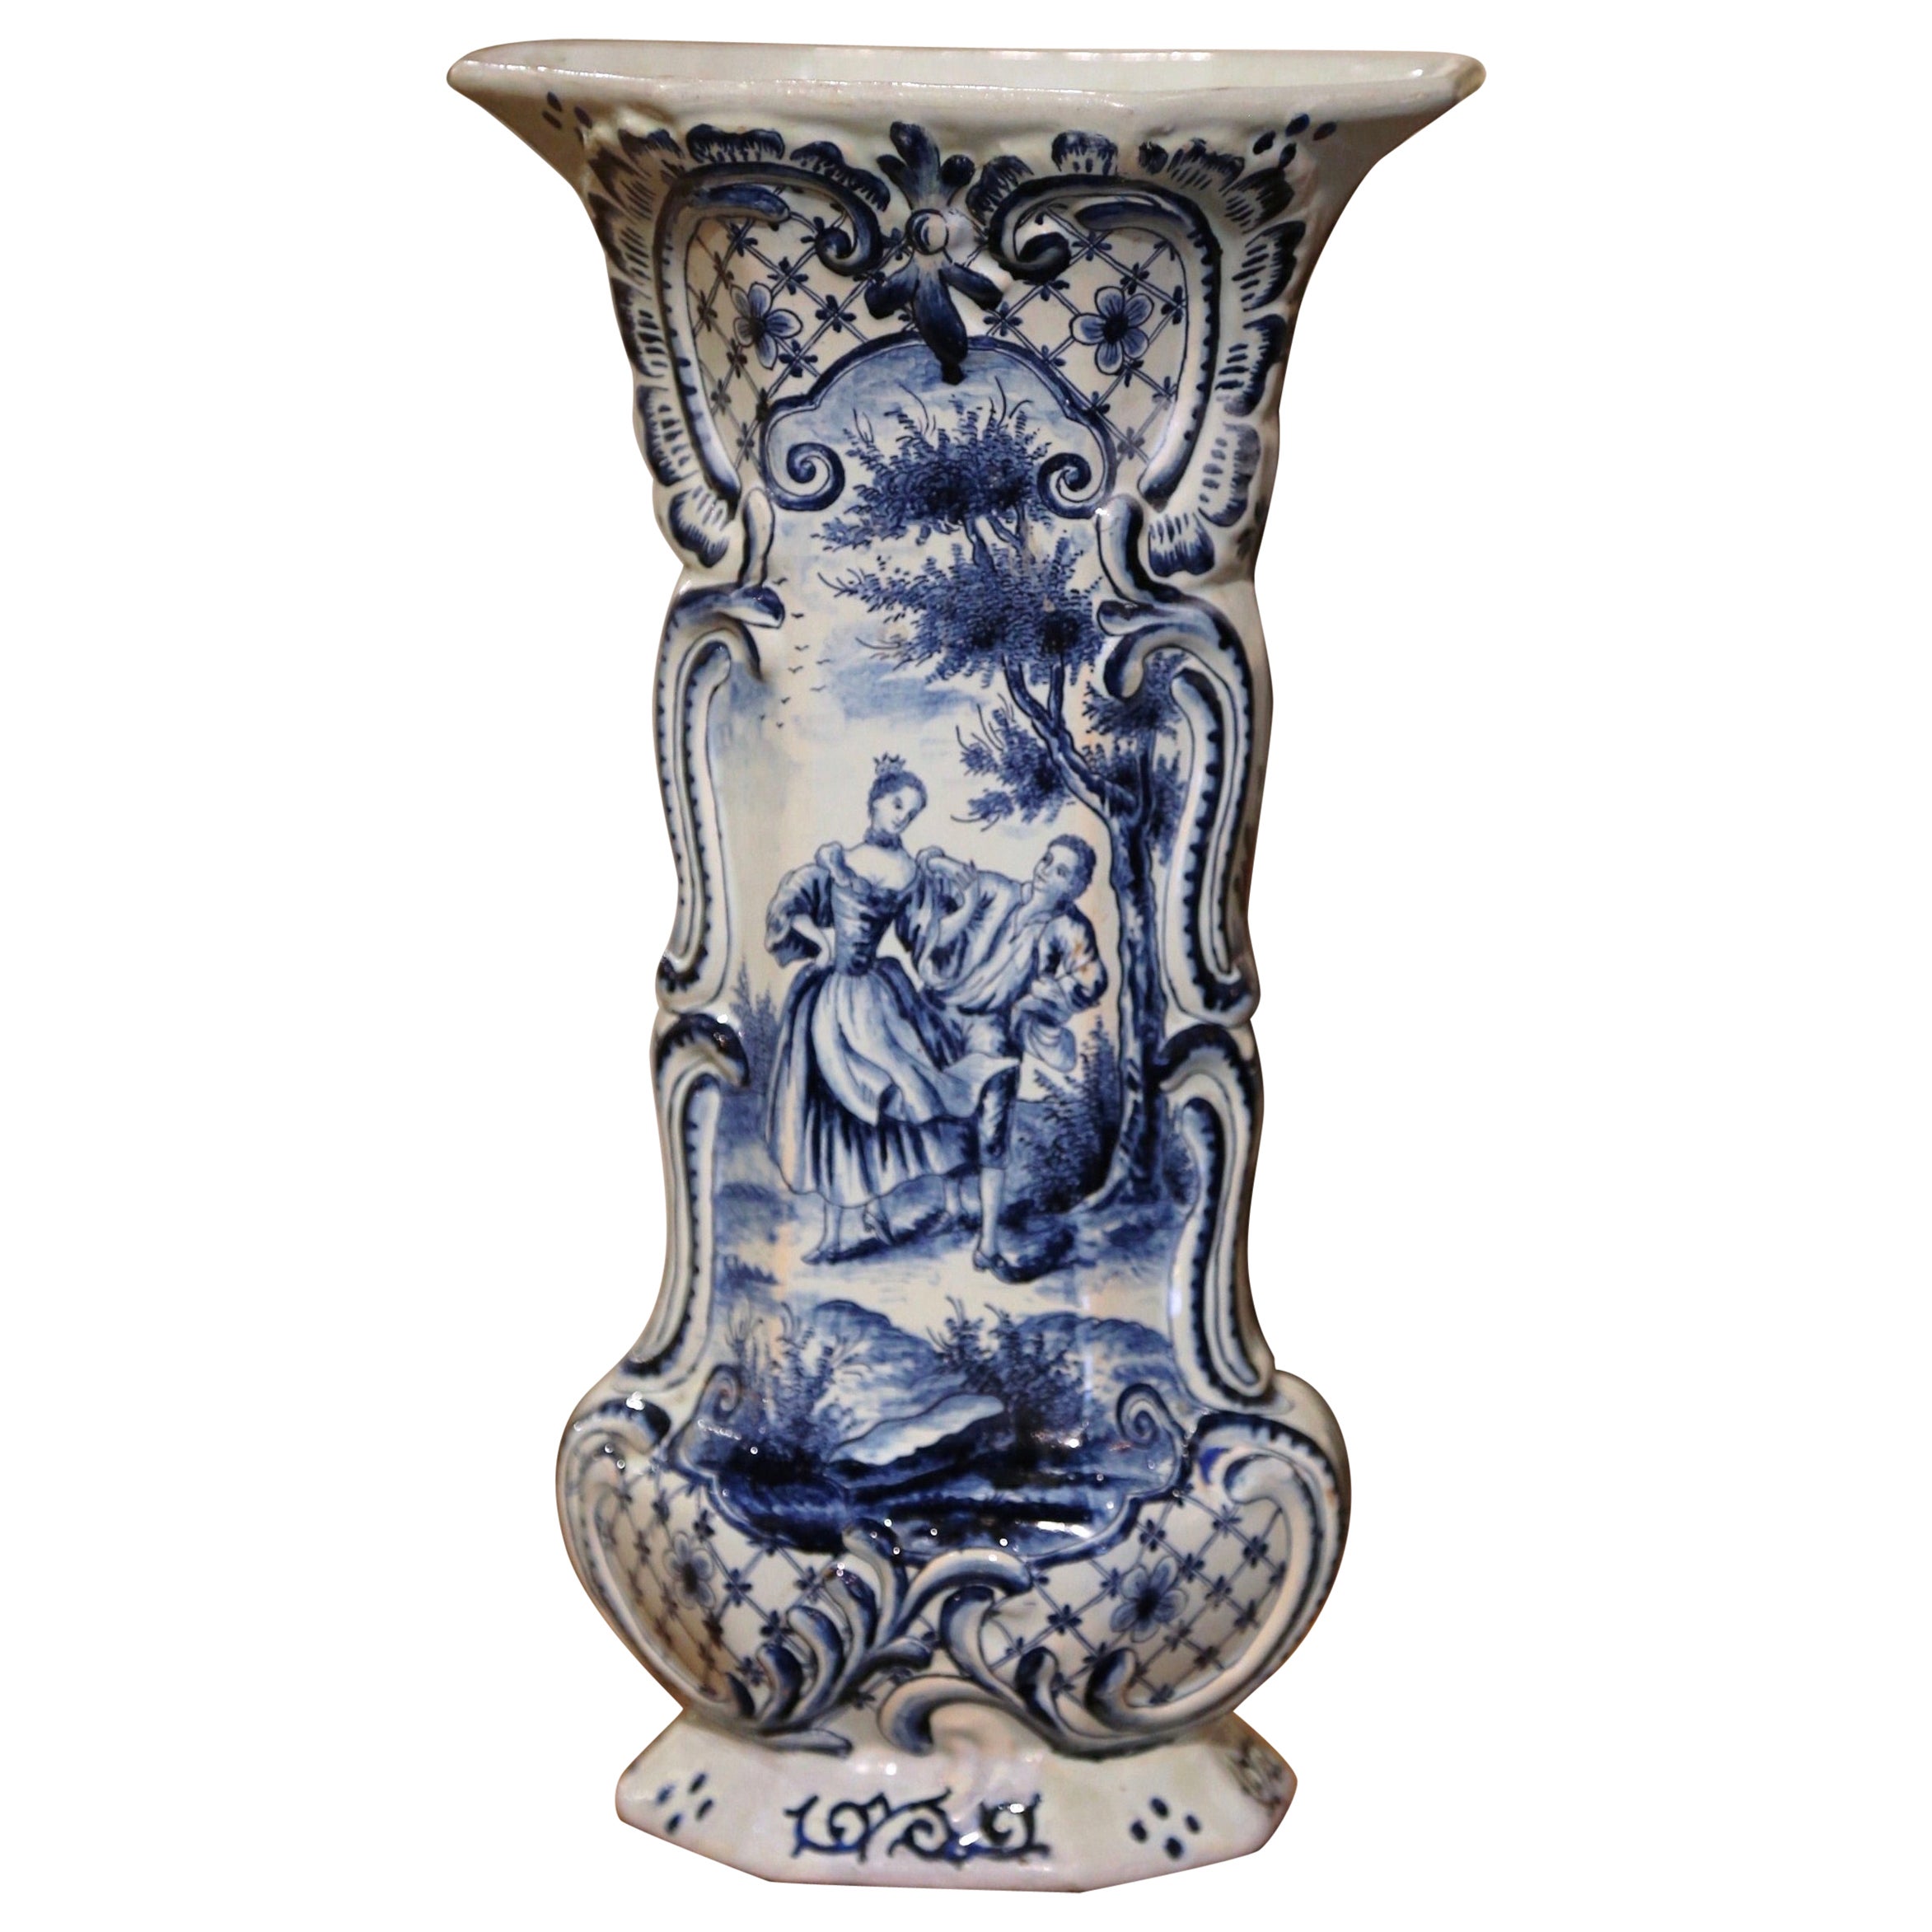  Französische blau-weiße handbemalte Fayence-Delft-Vase aus dem 18.